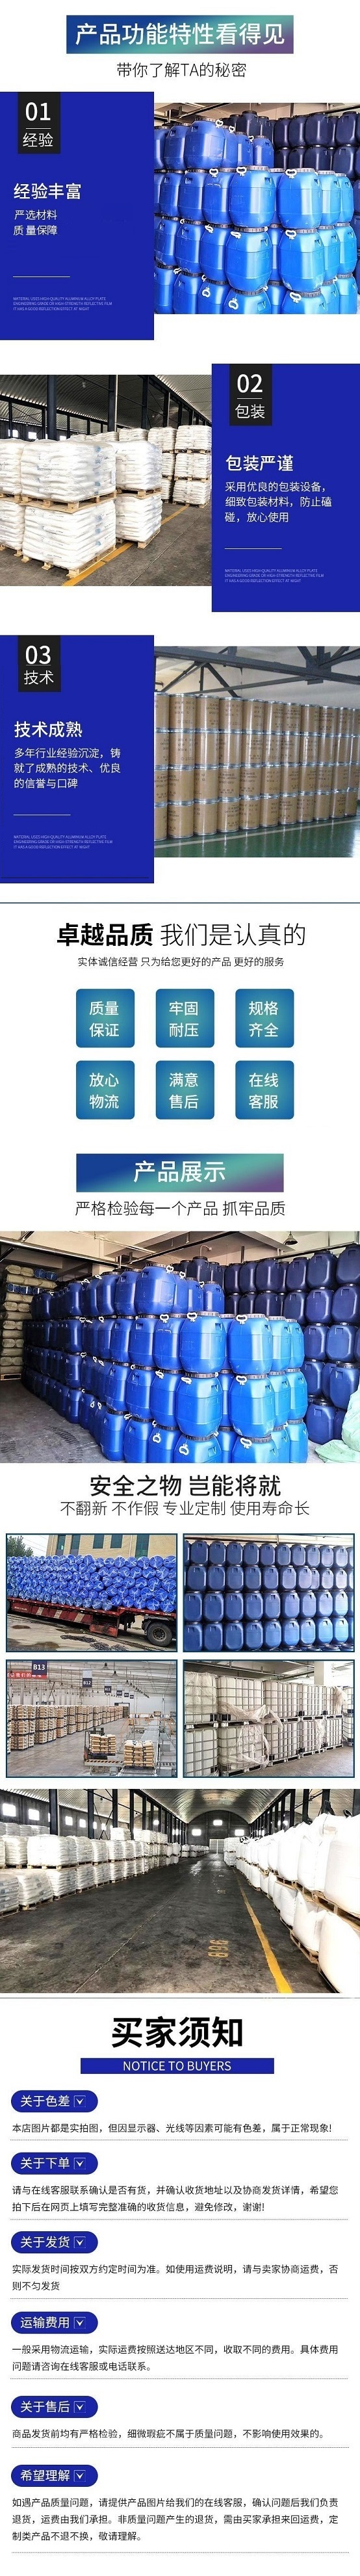 吉业升 芦笋粉 20KG箱装 食品添加剂 乳制品原料 化工助剂